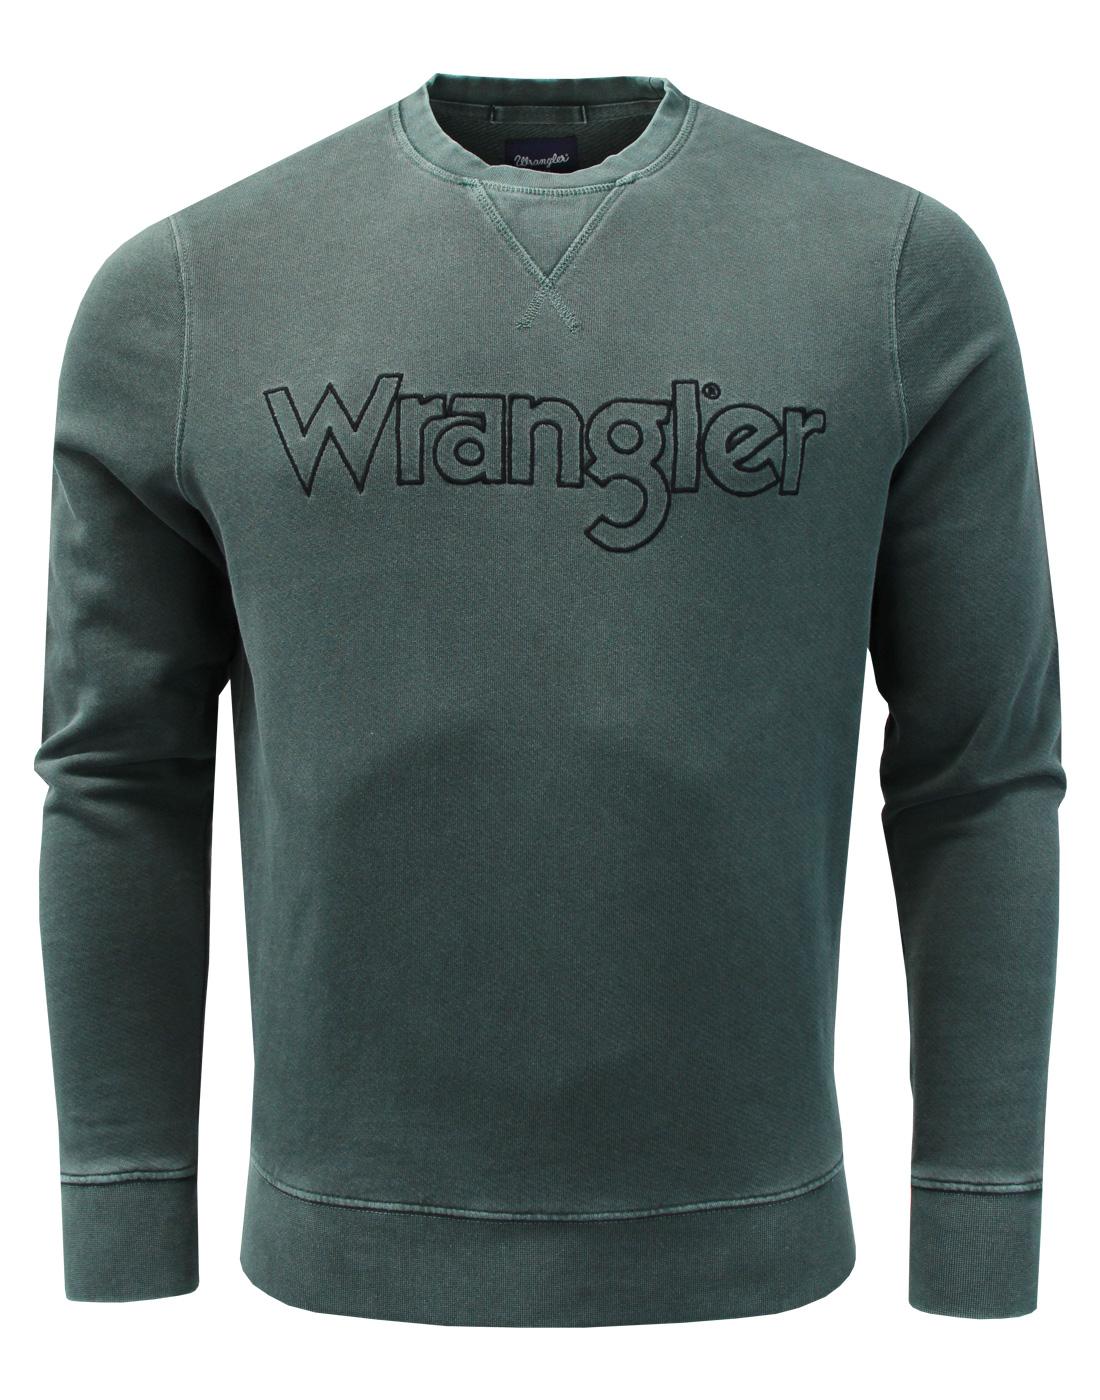 WRANGLER Retro 70s Authentic Crew Sweatshirt GREEN